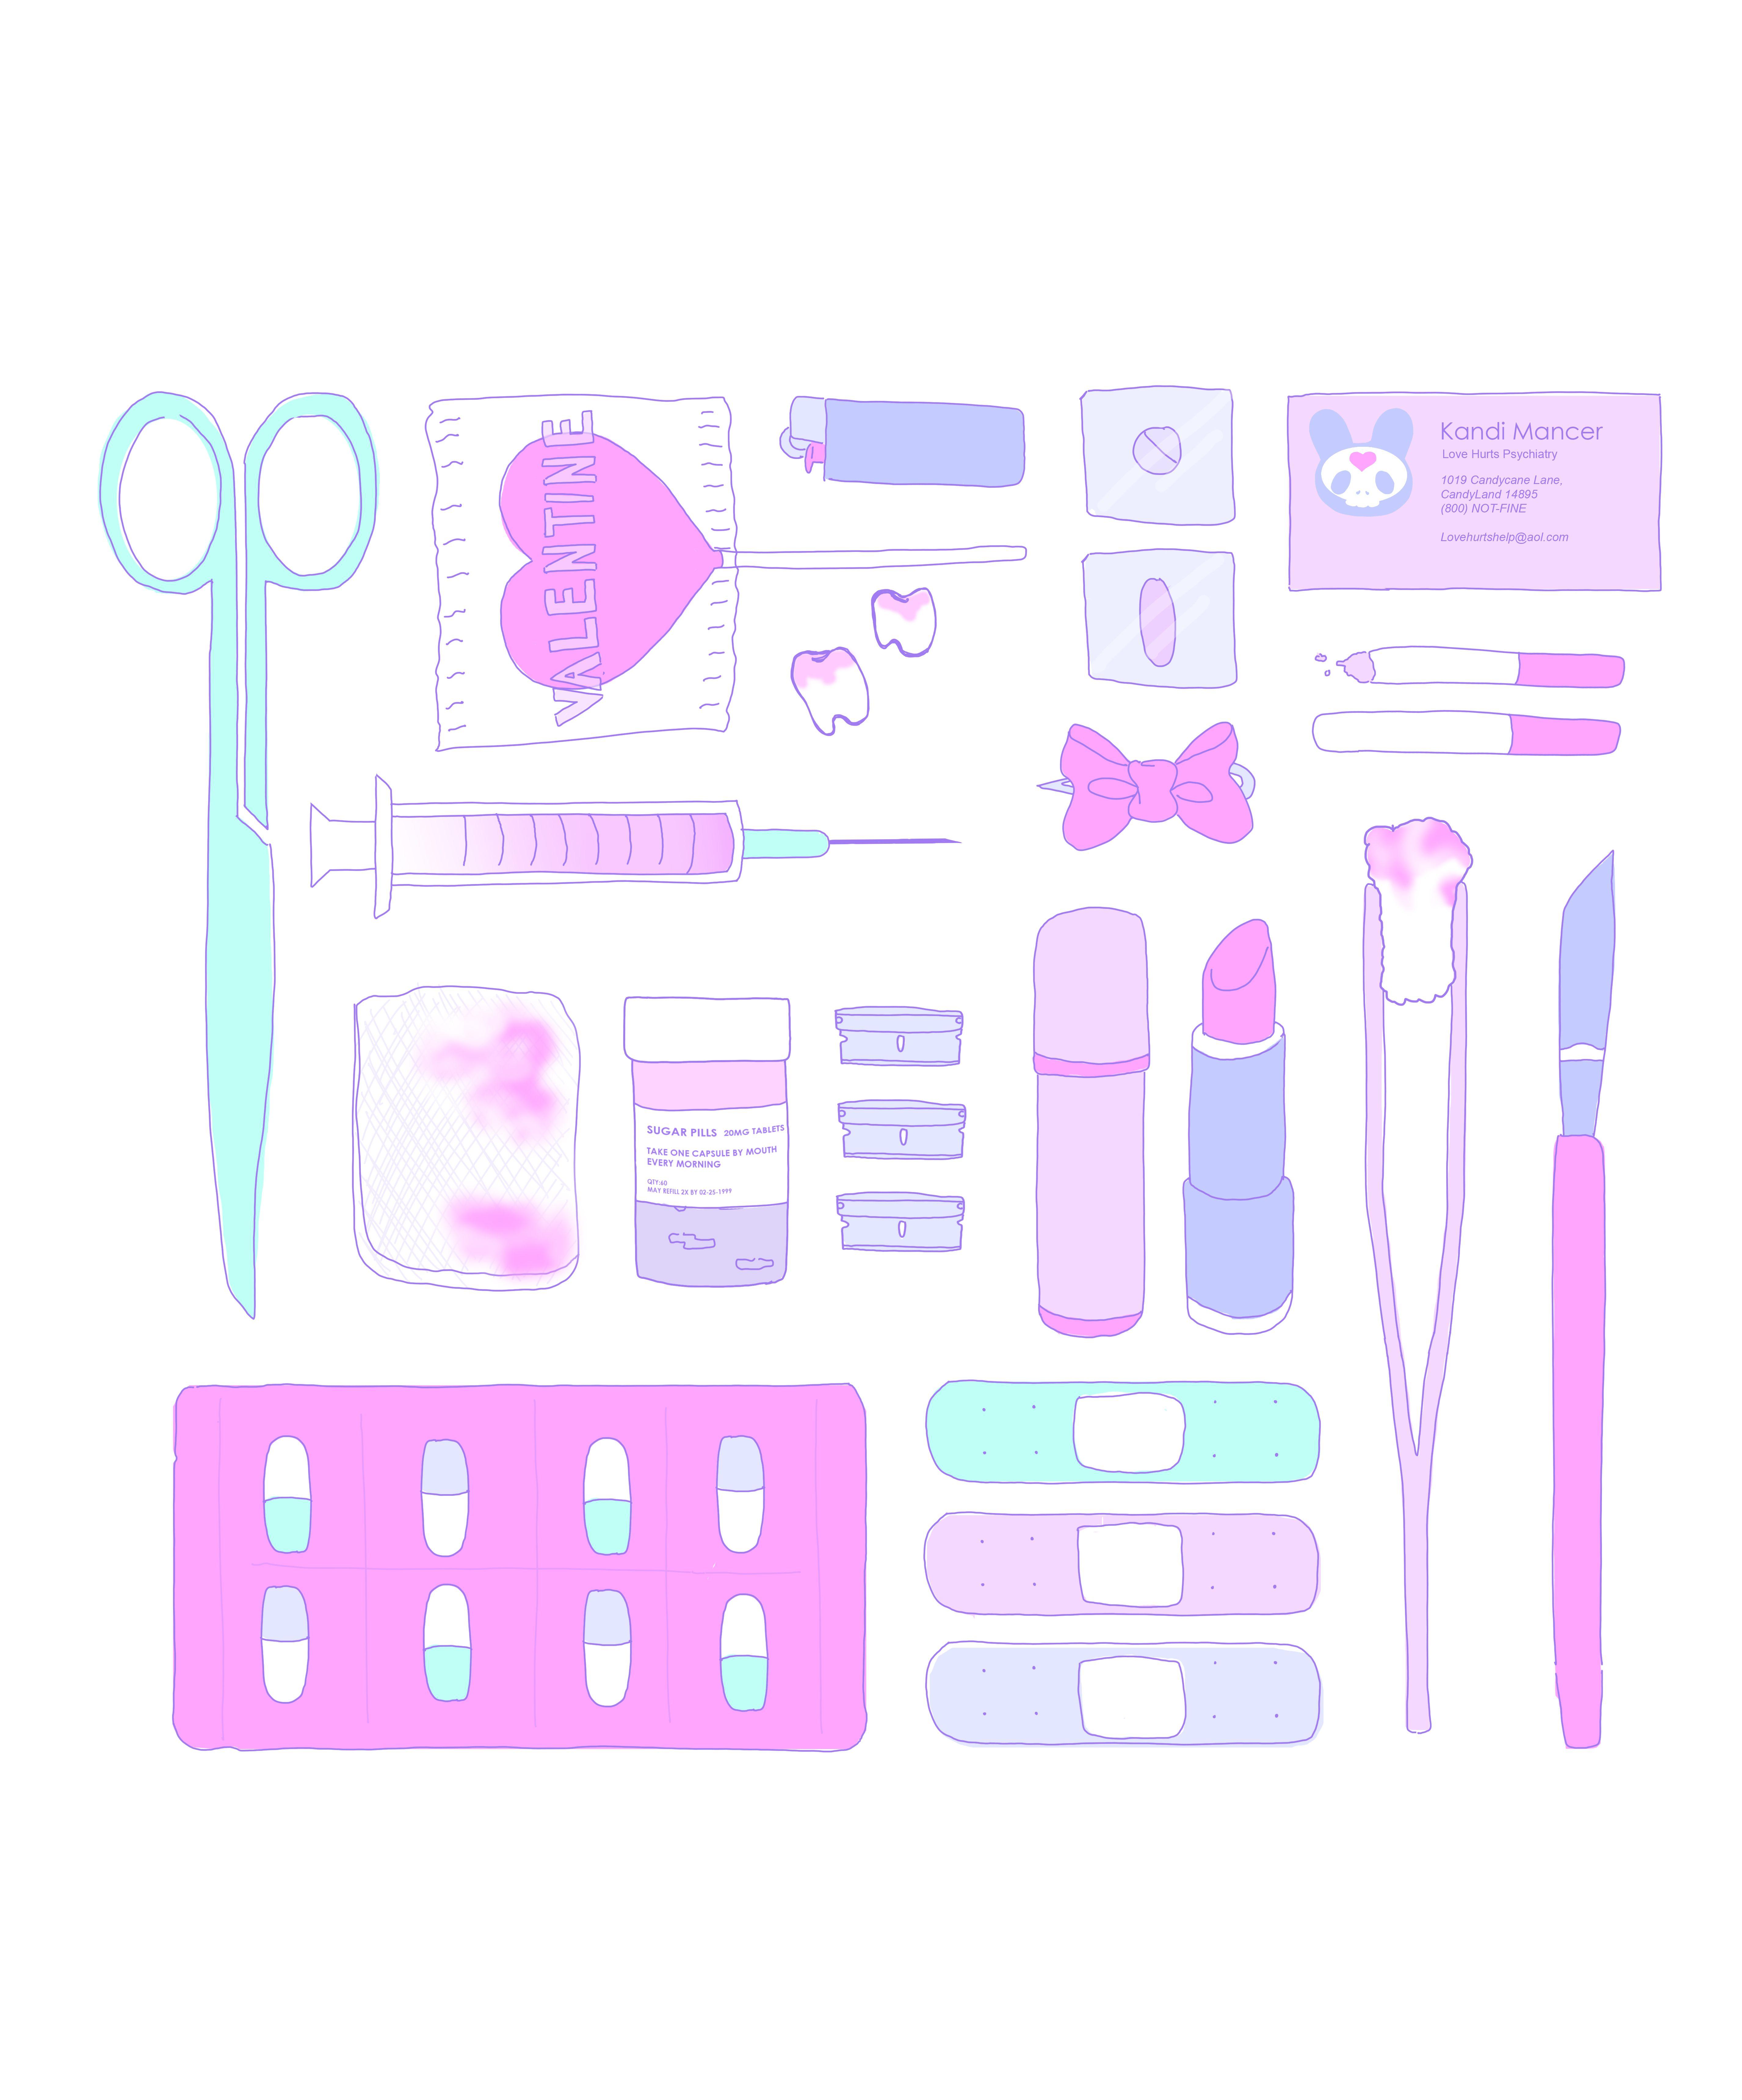 Menhera Creepy Cute Nurse Tools. My Art. Nurse aesthetic